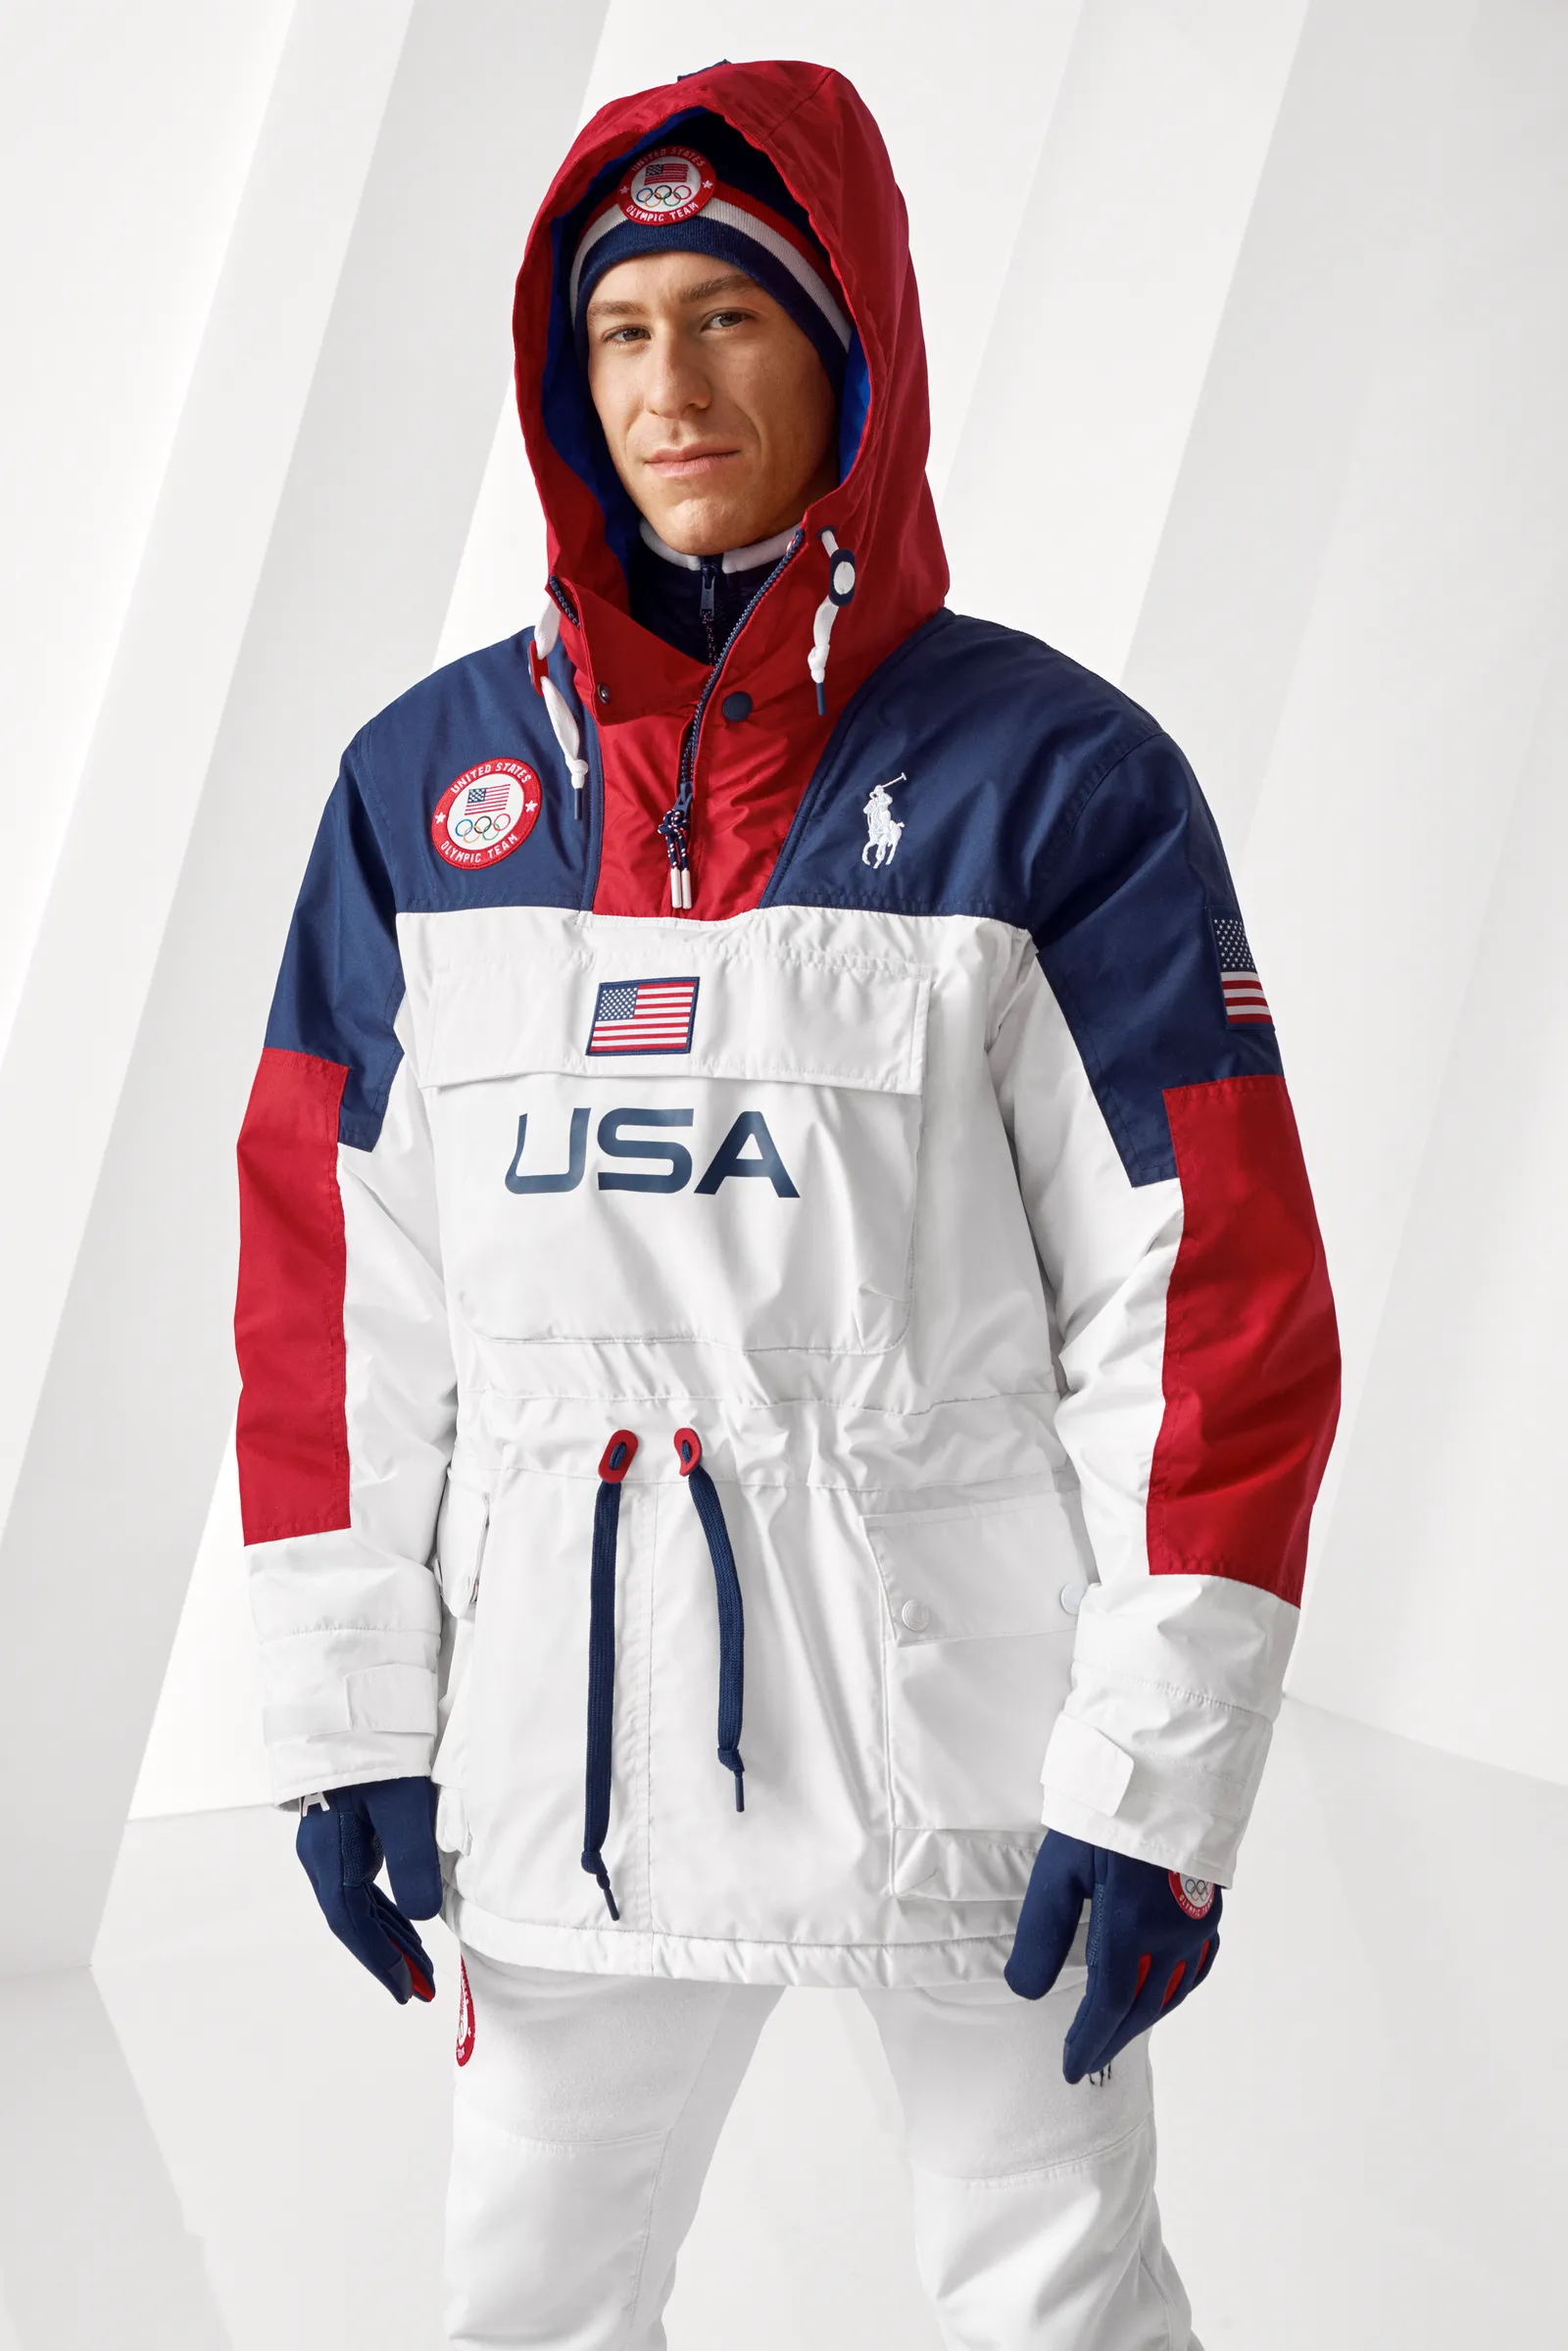 Ralph Lauren представил дизайн зимней спортивной формы для олимпийской команды США (фото 4)